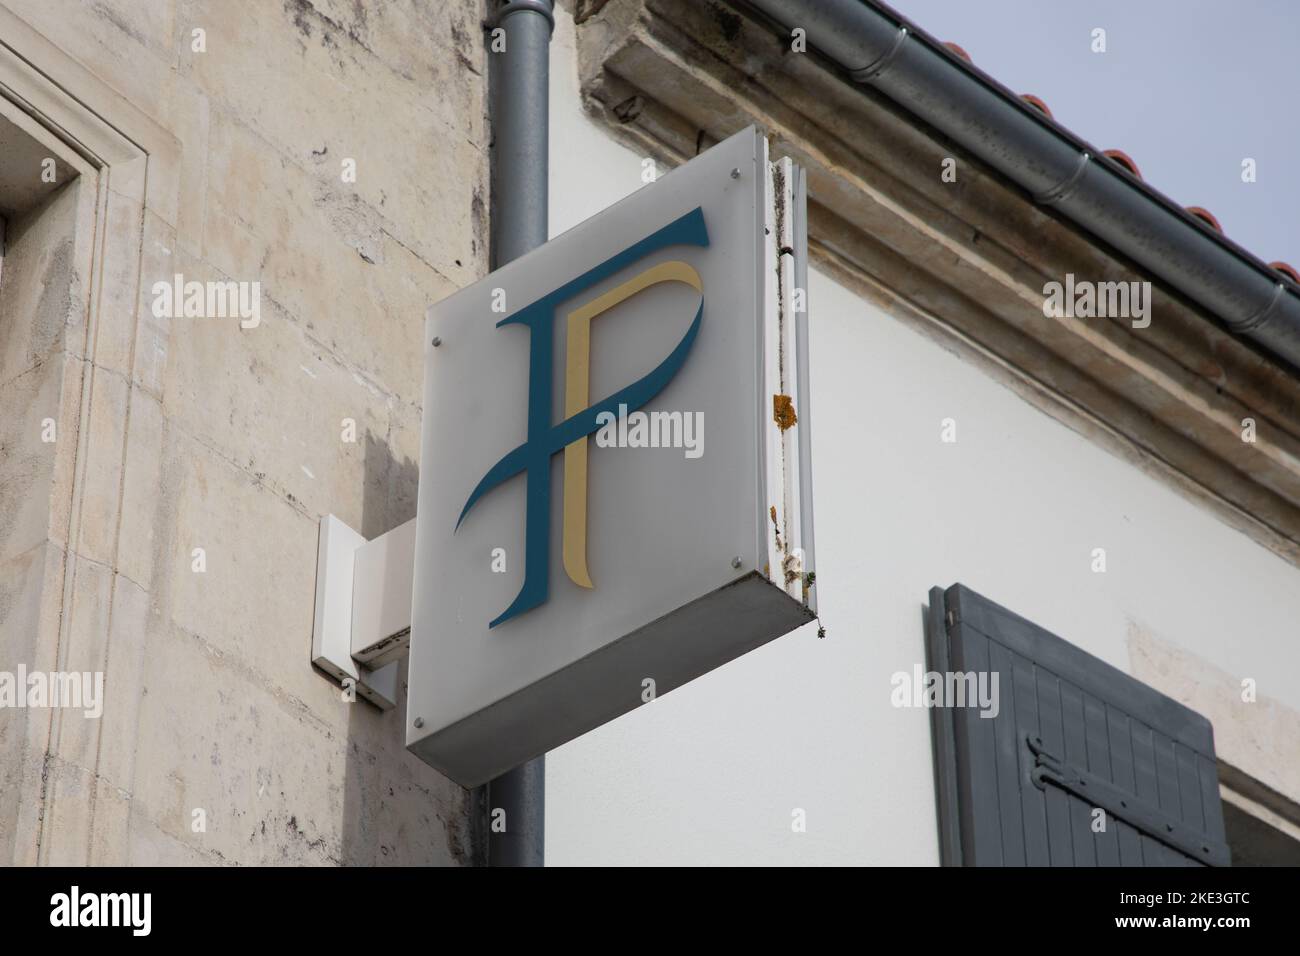 Bordeaux , Aquitaine  France - 10 30 2022 : finances publiques french public finances logo text agency sign brand on office building Stock Photo